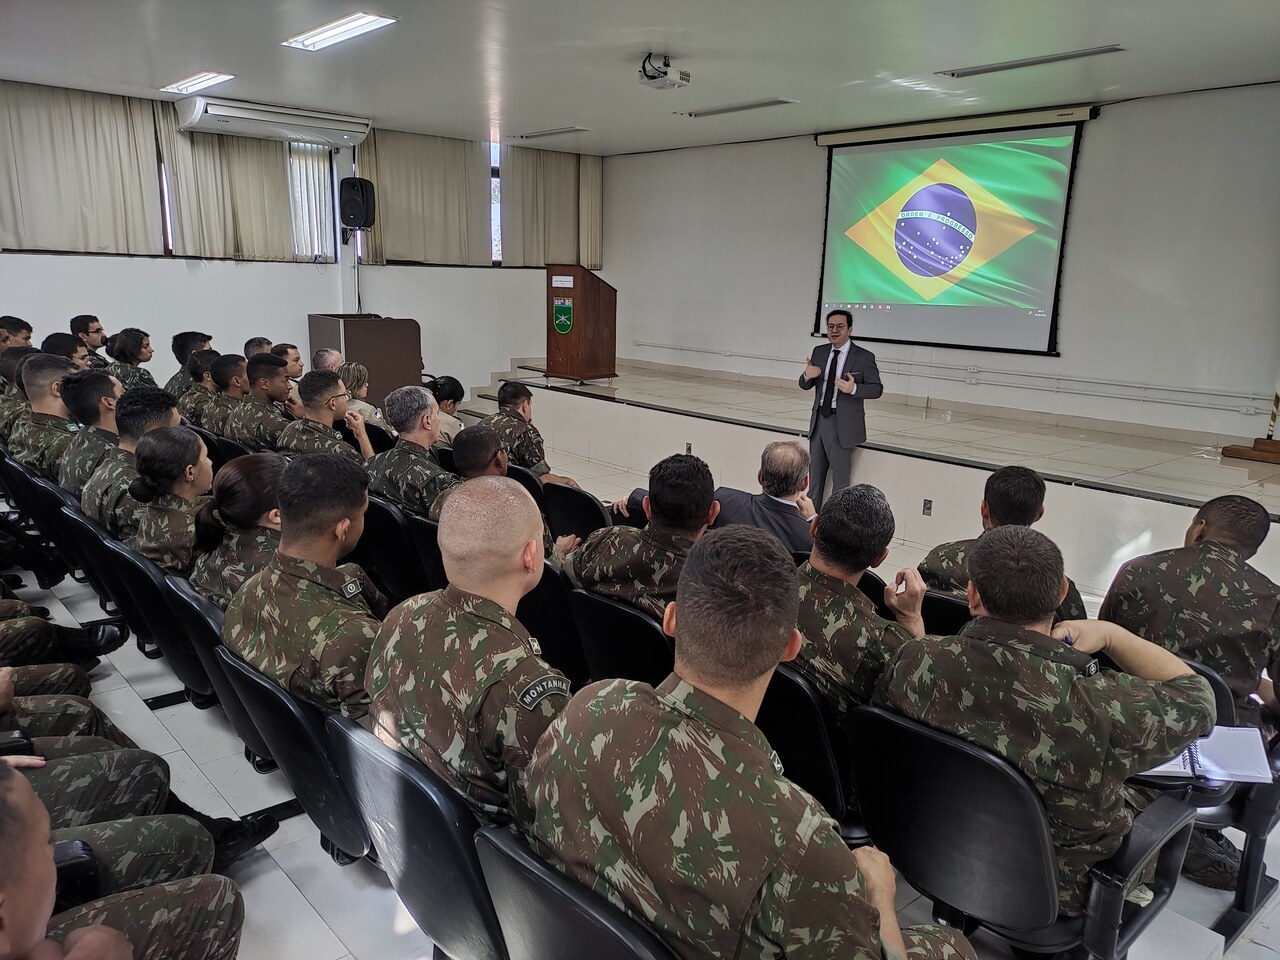 22º Batalhão de Infantaria realiza simpósio sobre a Garantia da Votação e Apuração das Eleições 2022 no Tocantins